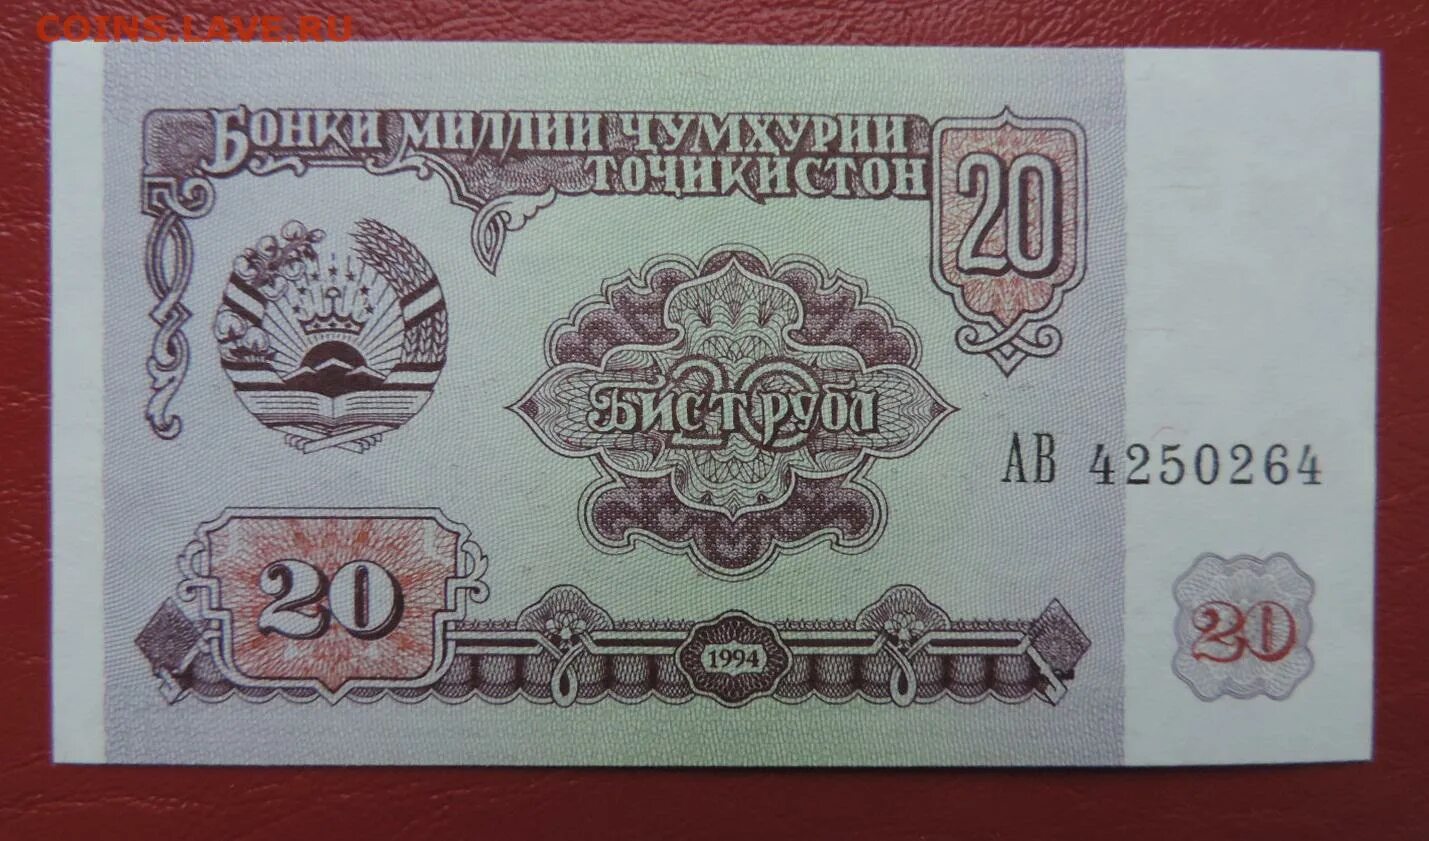 Таджикистан банкнота 50 рублей 1994. Эмблема Бонки миллии. Бона Таджикистан 20 рублей 1994 год. 10000 Рублей 1994 Таджикистан.